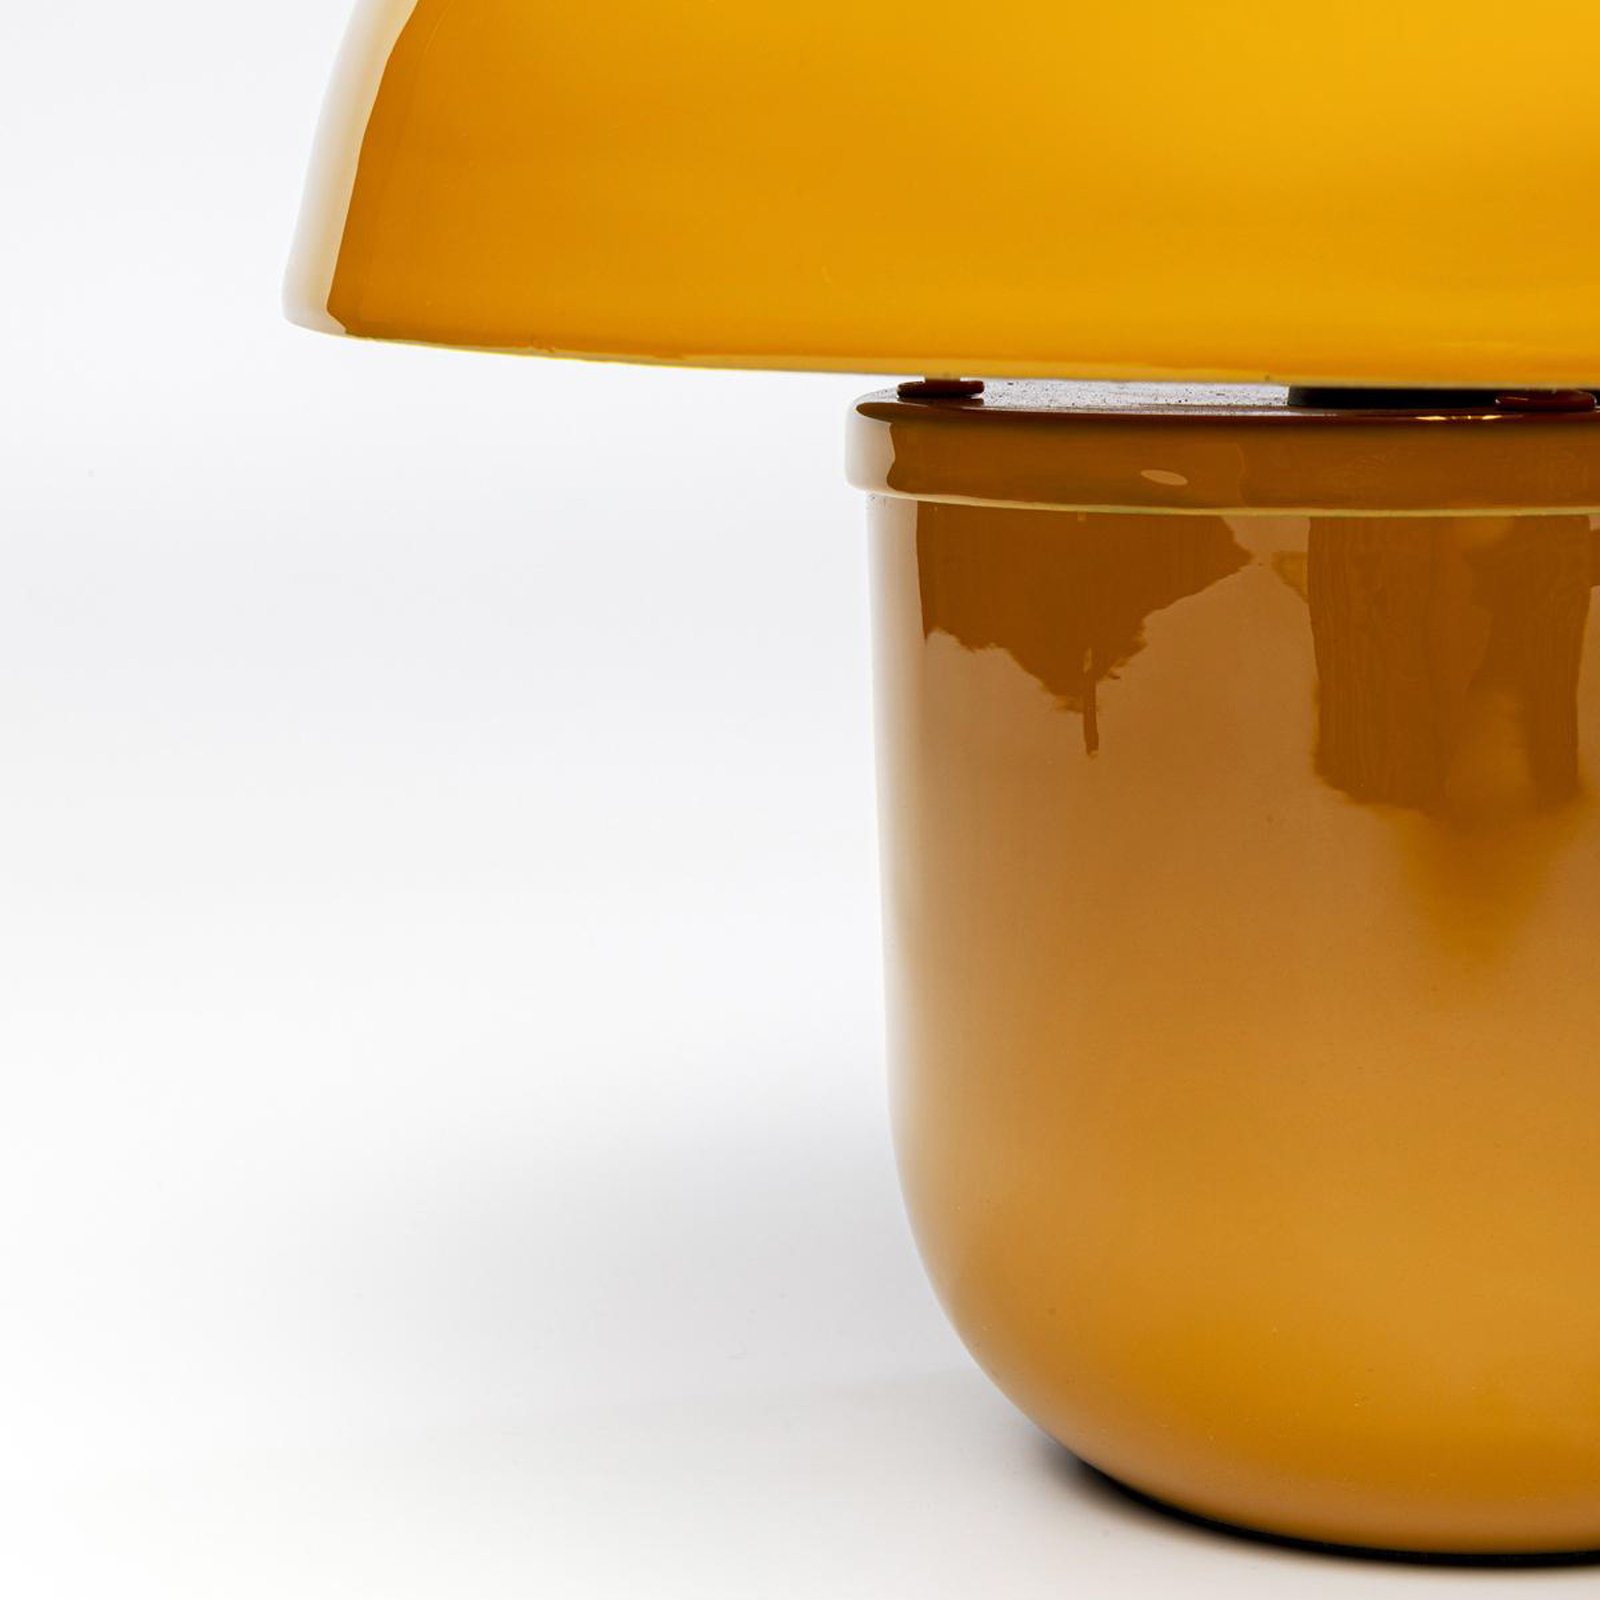 KARE Mushroom bordlampe, gul, emaljert stål, høyde 27 cm